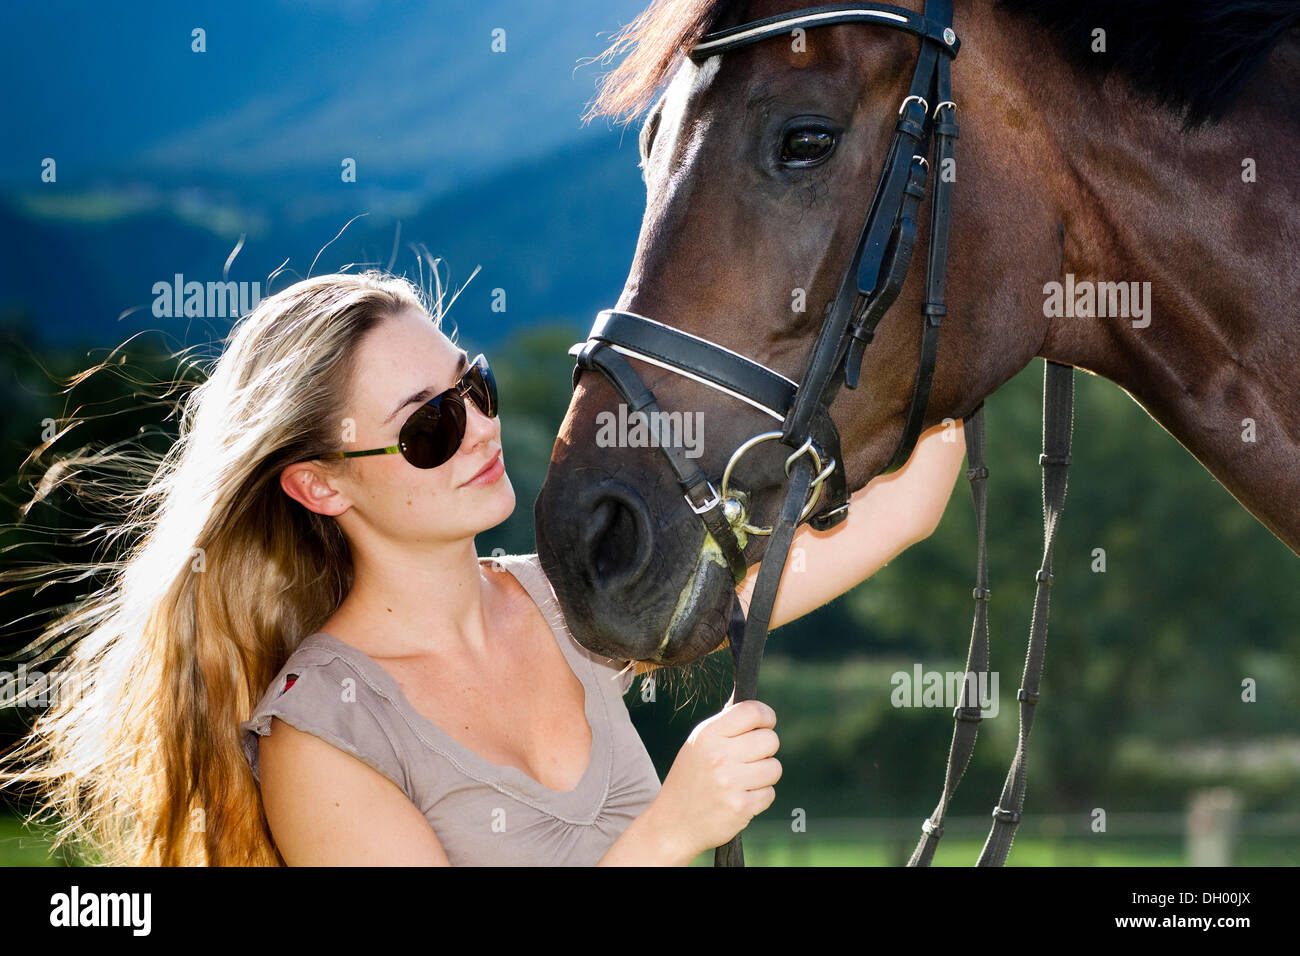 Junge Frau mit Sonnenbrille kuscheln mit einem Pferd, Hannoveraner, Bucht,  Nord-Tirol, Austria, Europe Stockfotografie - Alamy